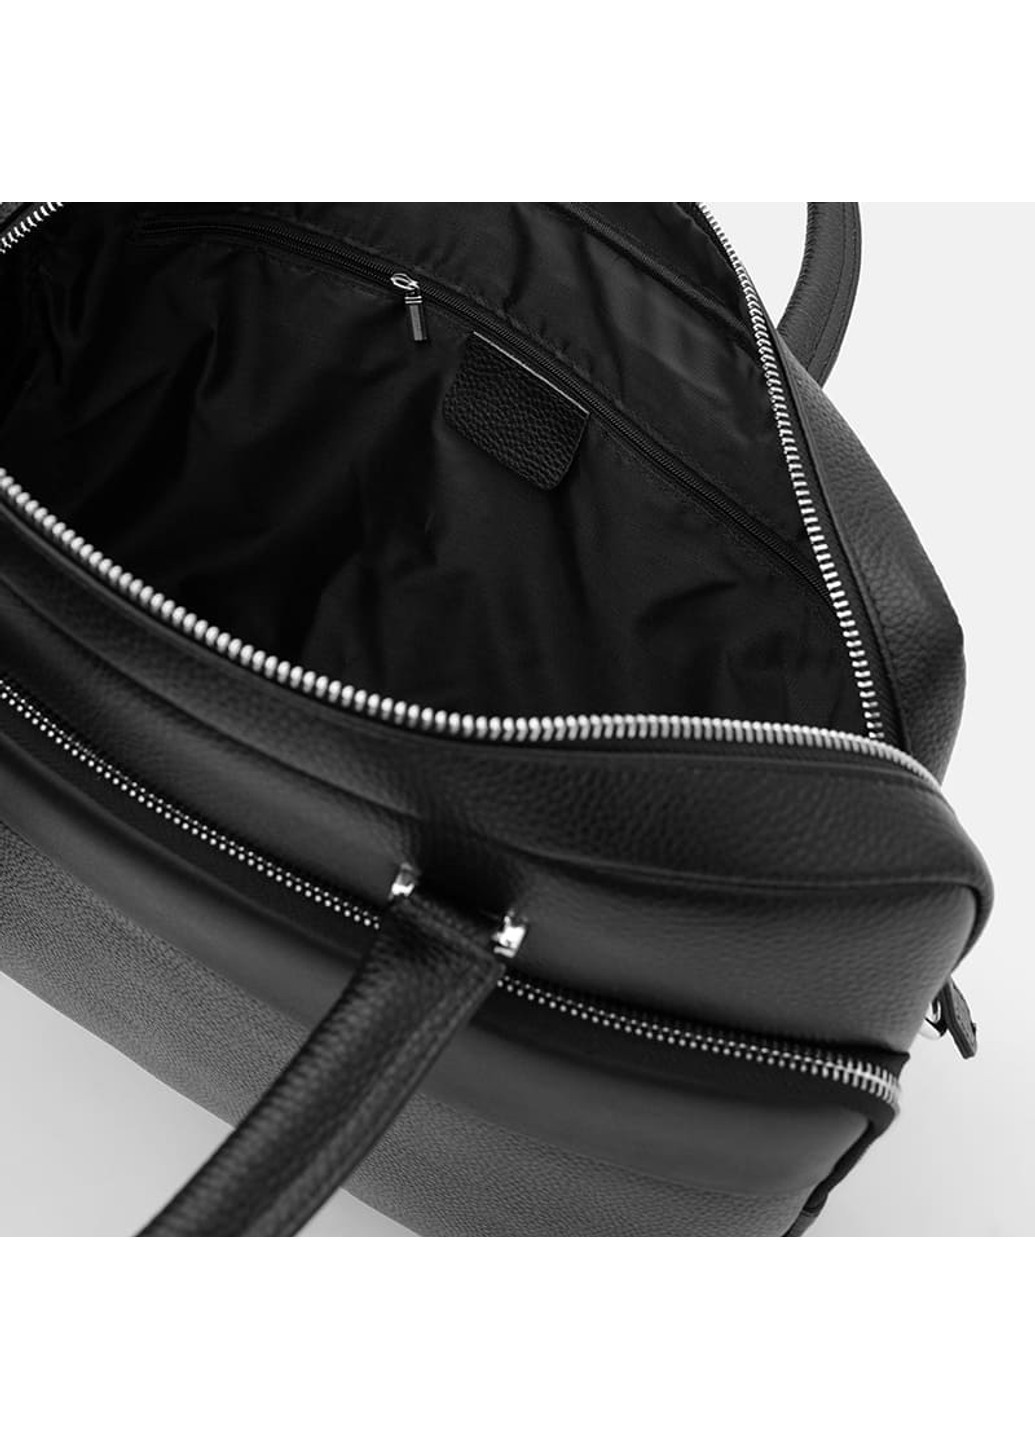 Мужская кожаная сумка K18820-1bl-black Borsa Leather (266143414)